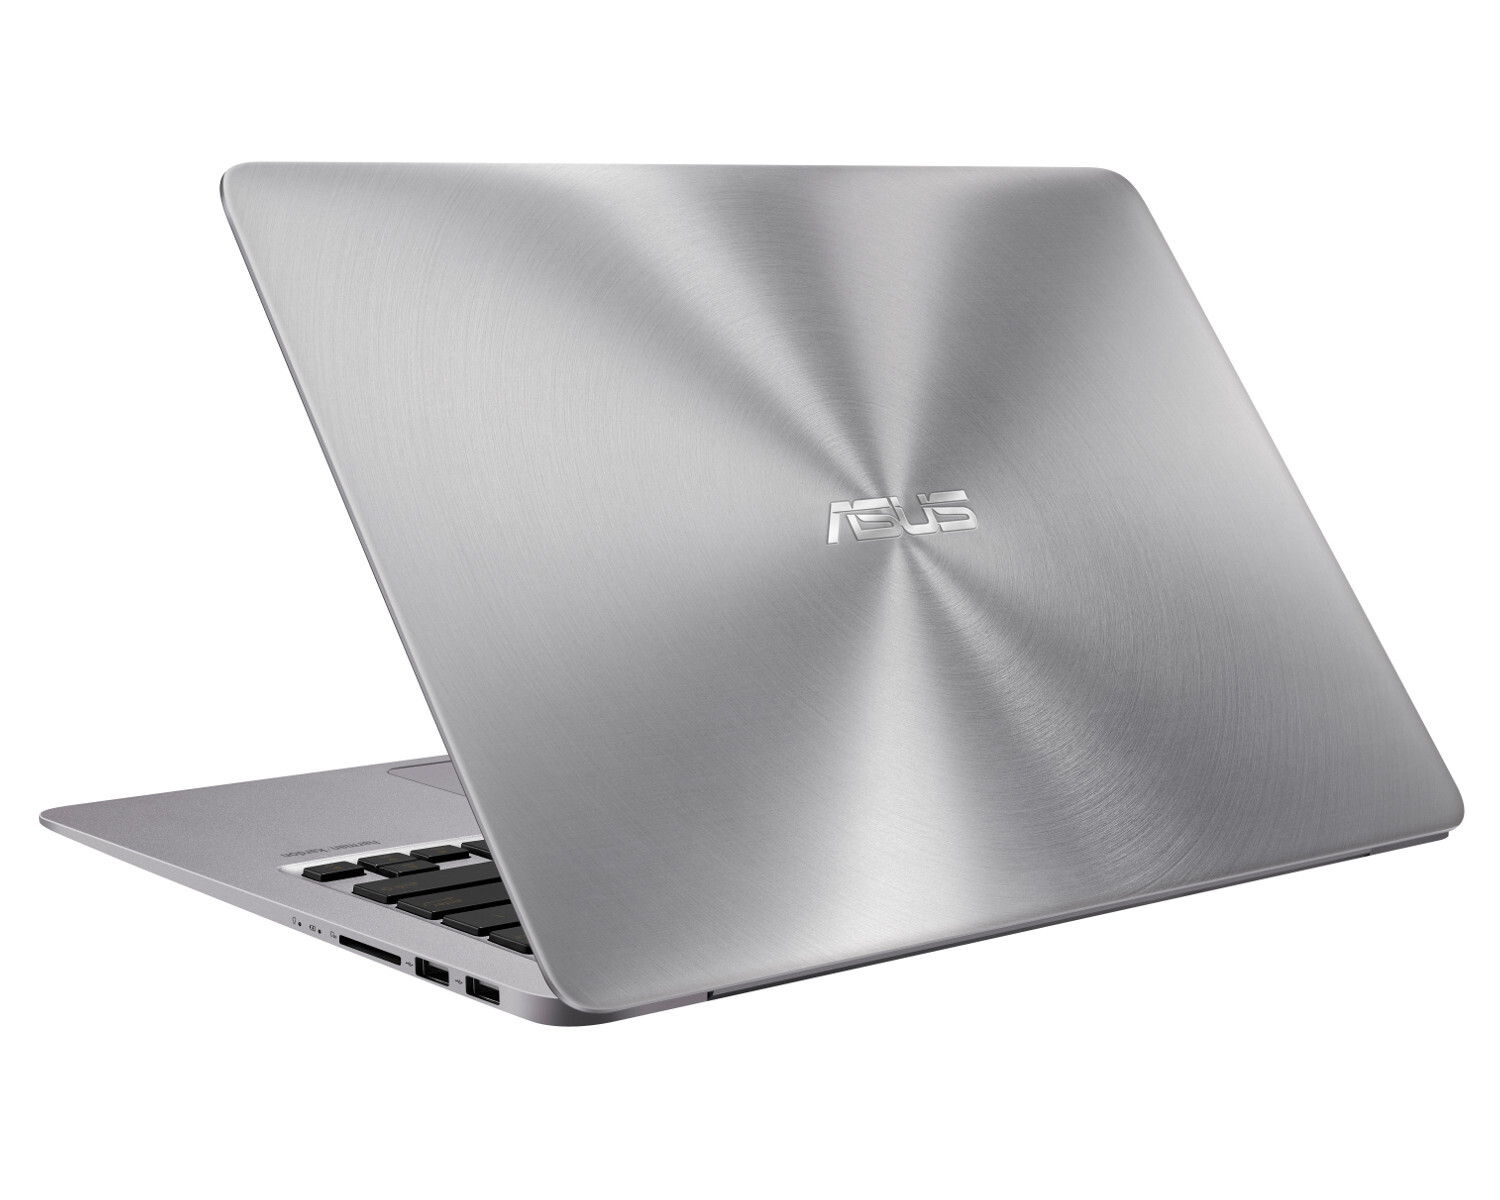 Laptop Asus K501UQ-DM067D - Intel i3 6100U, RAM 4GB, HDD 500GB, VGA rời, 15.6inch